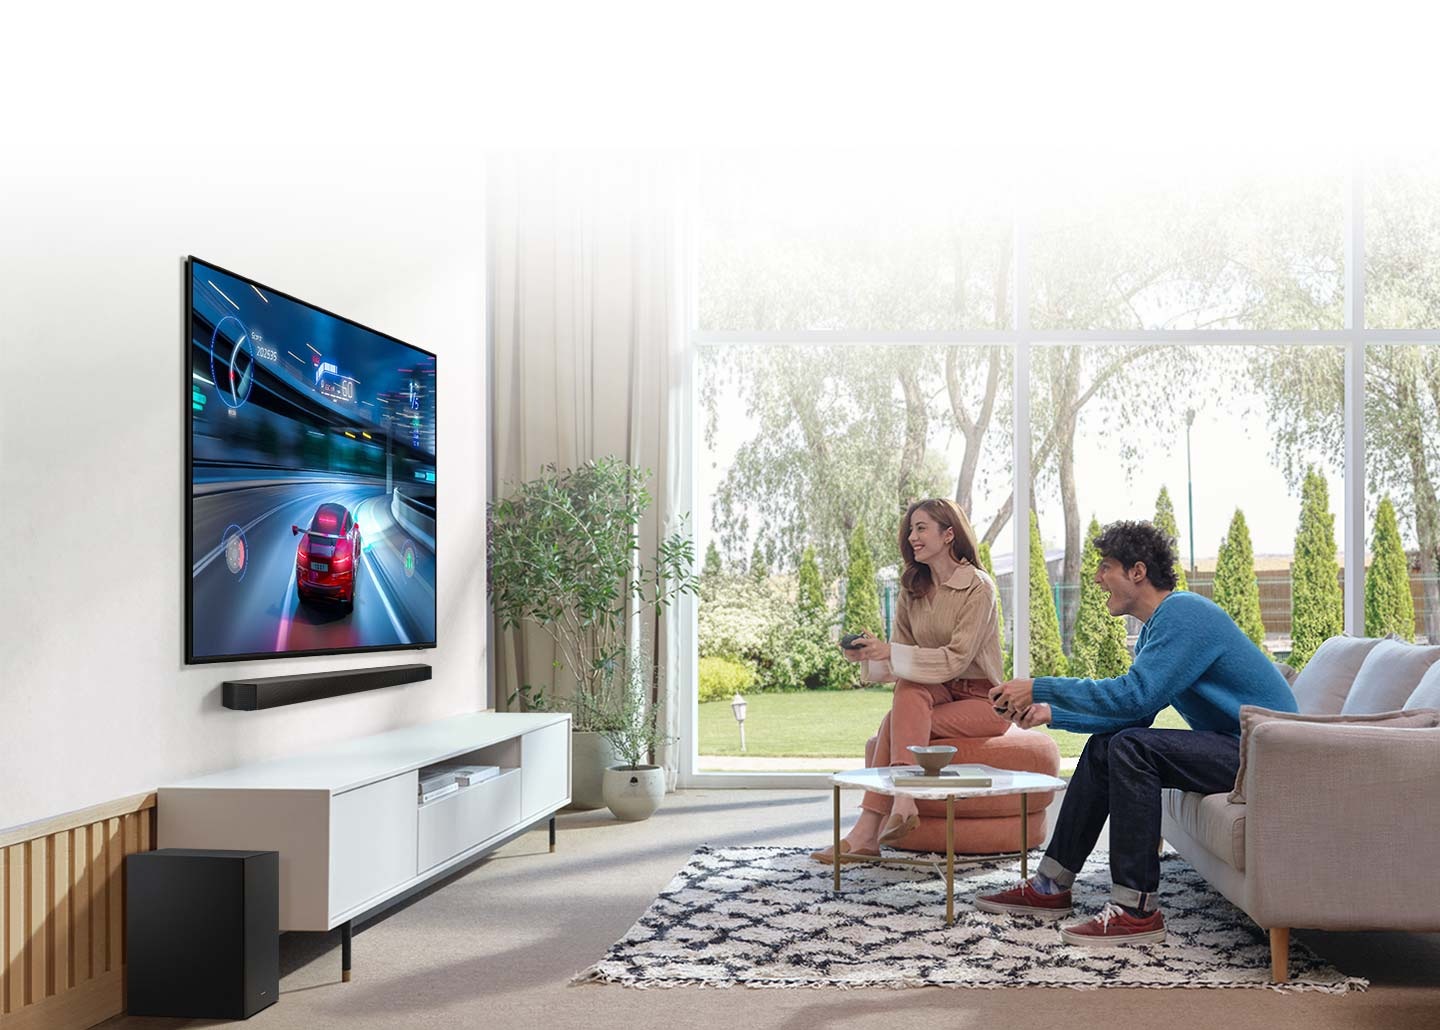 Muž a žena hrají závodní hru na svém televizoru, pod kterým je Soundbar, který poskytuje optimalizovaný zvuk s herním režimem.